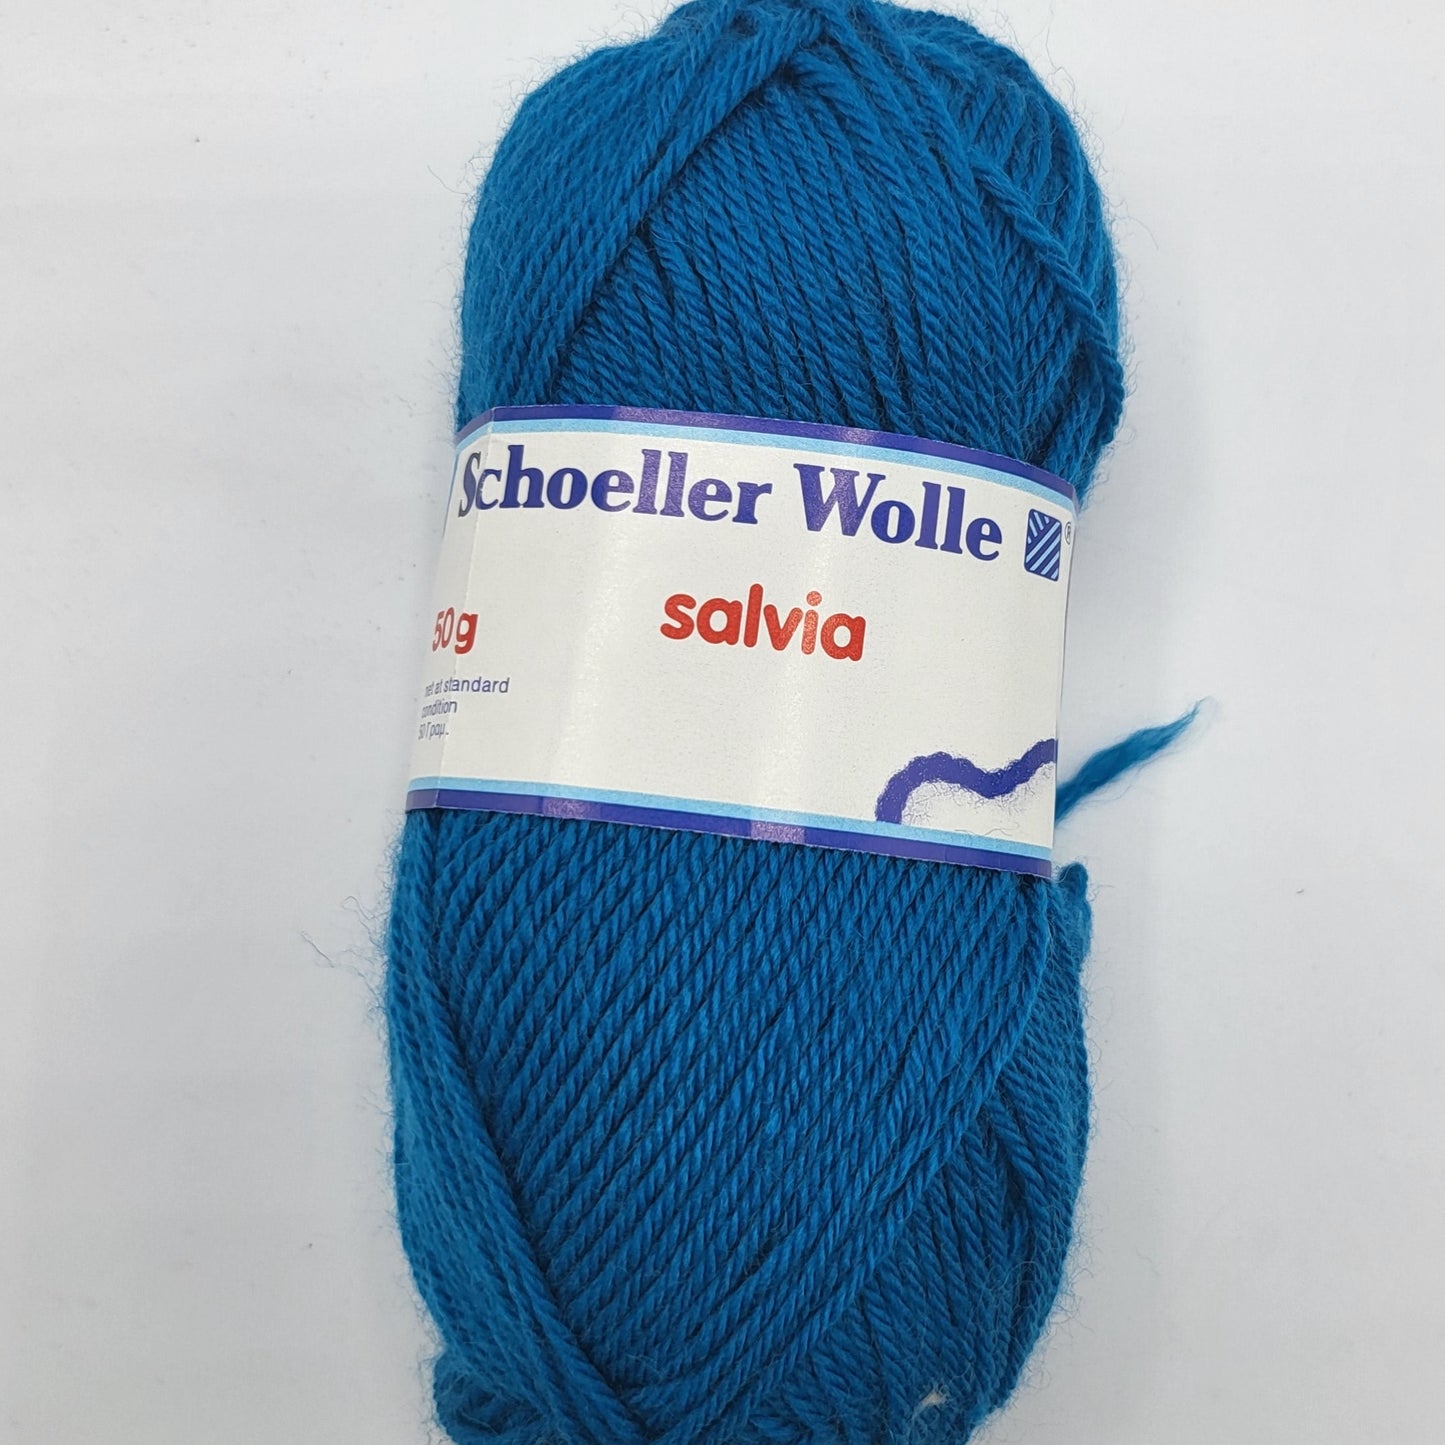 Schoeller Wolle Salvia 50g 65% aus Schurwolle natürliche Wärme und Weichheit